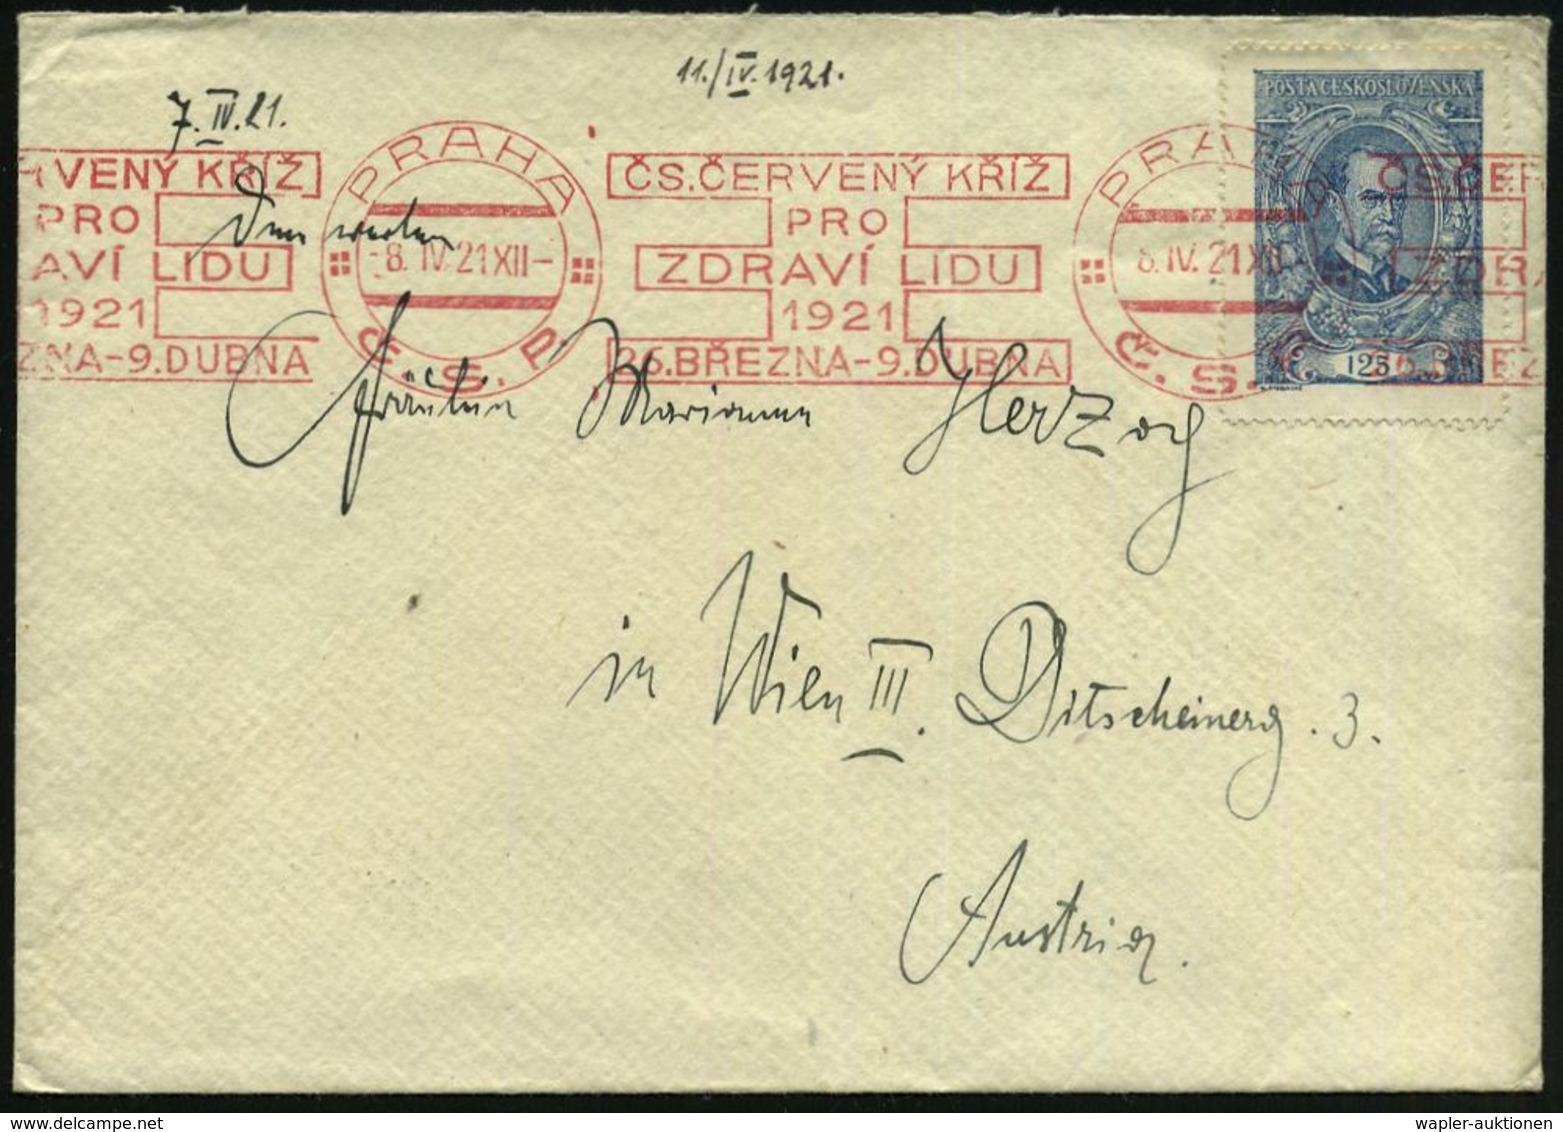 ROTKREUZ-KONFERENZEN & KONGRESSE : TSCHECHOSLOWAKEI 1921 (8.4.) Seltener, Roter BdMWSt: PRAHA/C.S.R./CS. CERVENY KRIZ/PR - Croix-Rouge